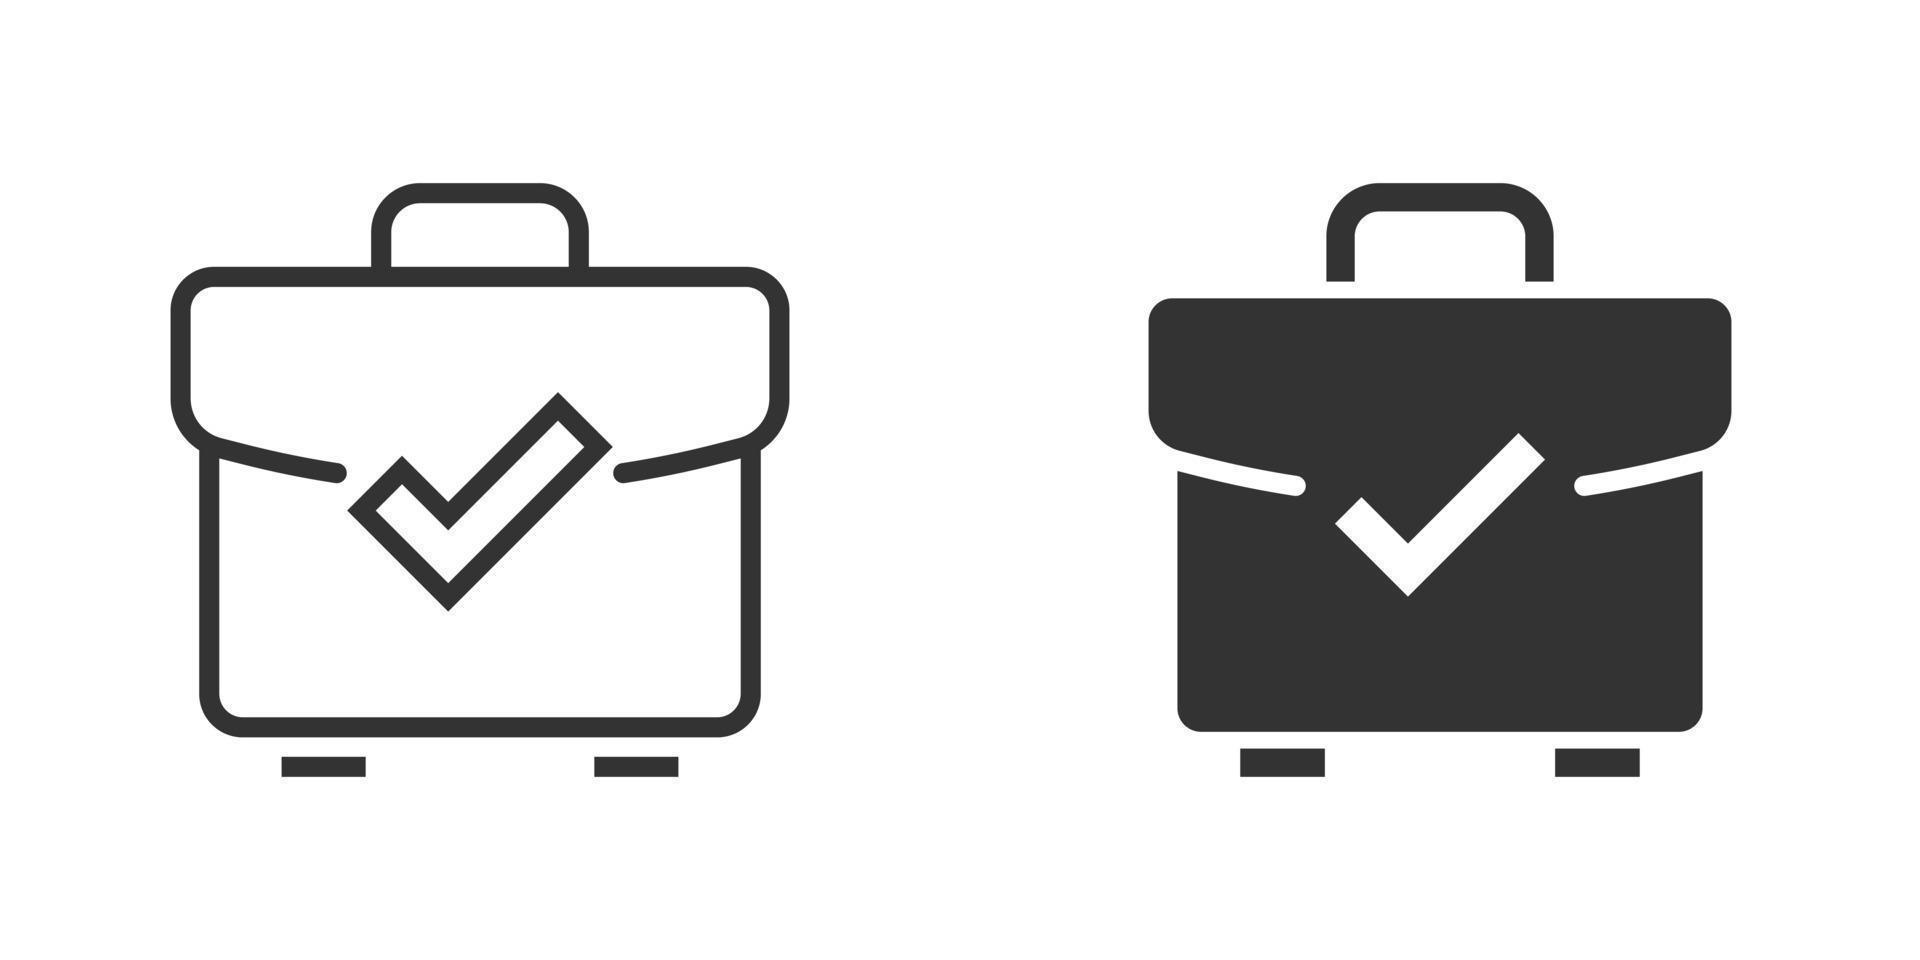 maleta aceita ícone em estilo simples. ilustração em vetor aprovação de portfólio em fundo branco isolado. confirme o conceito de negócio.